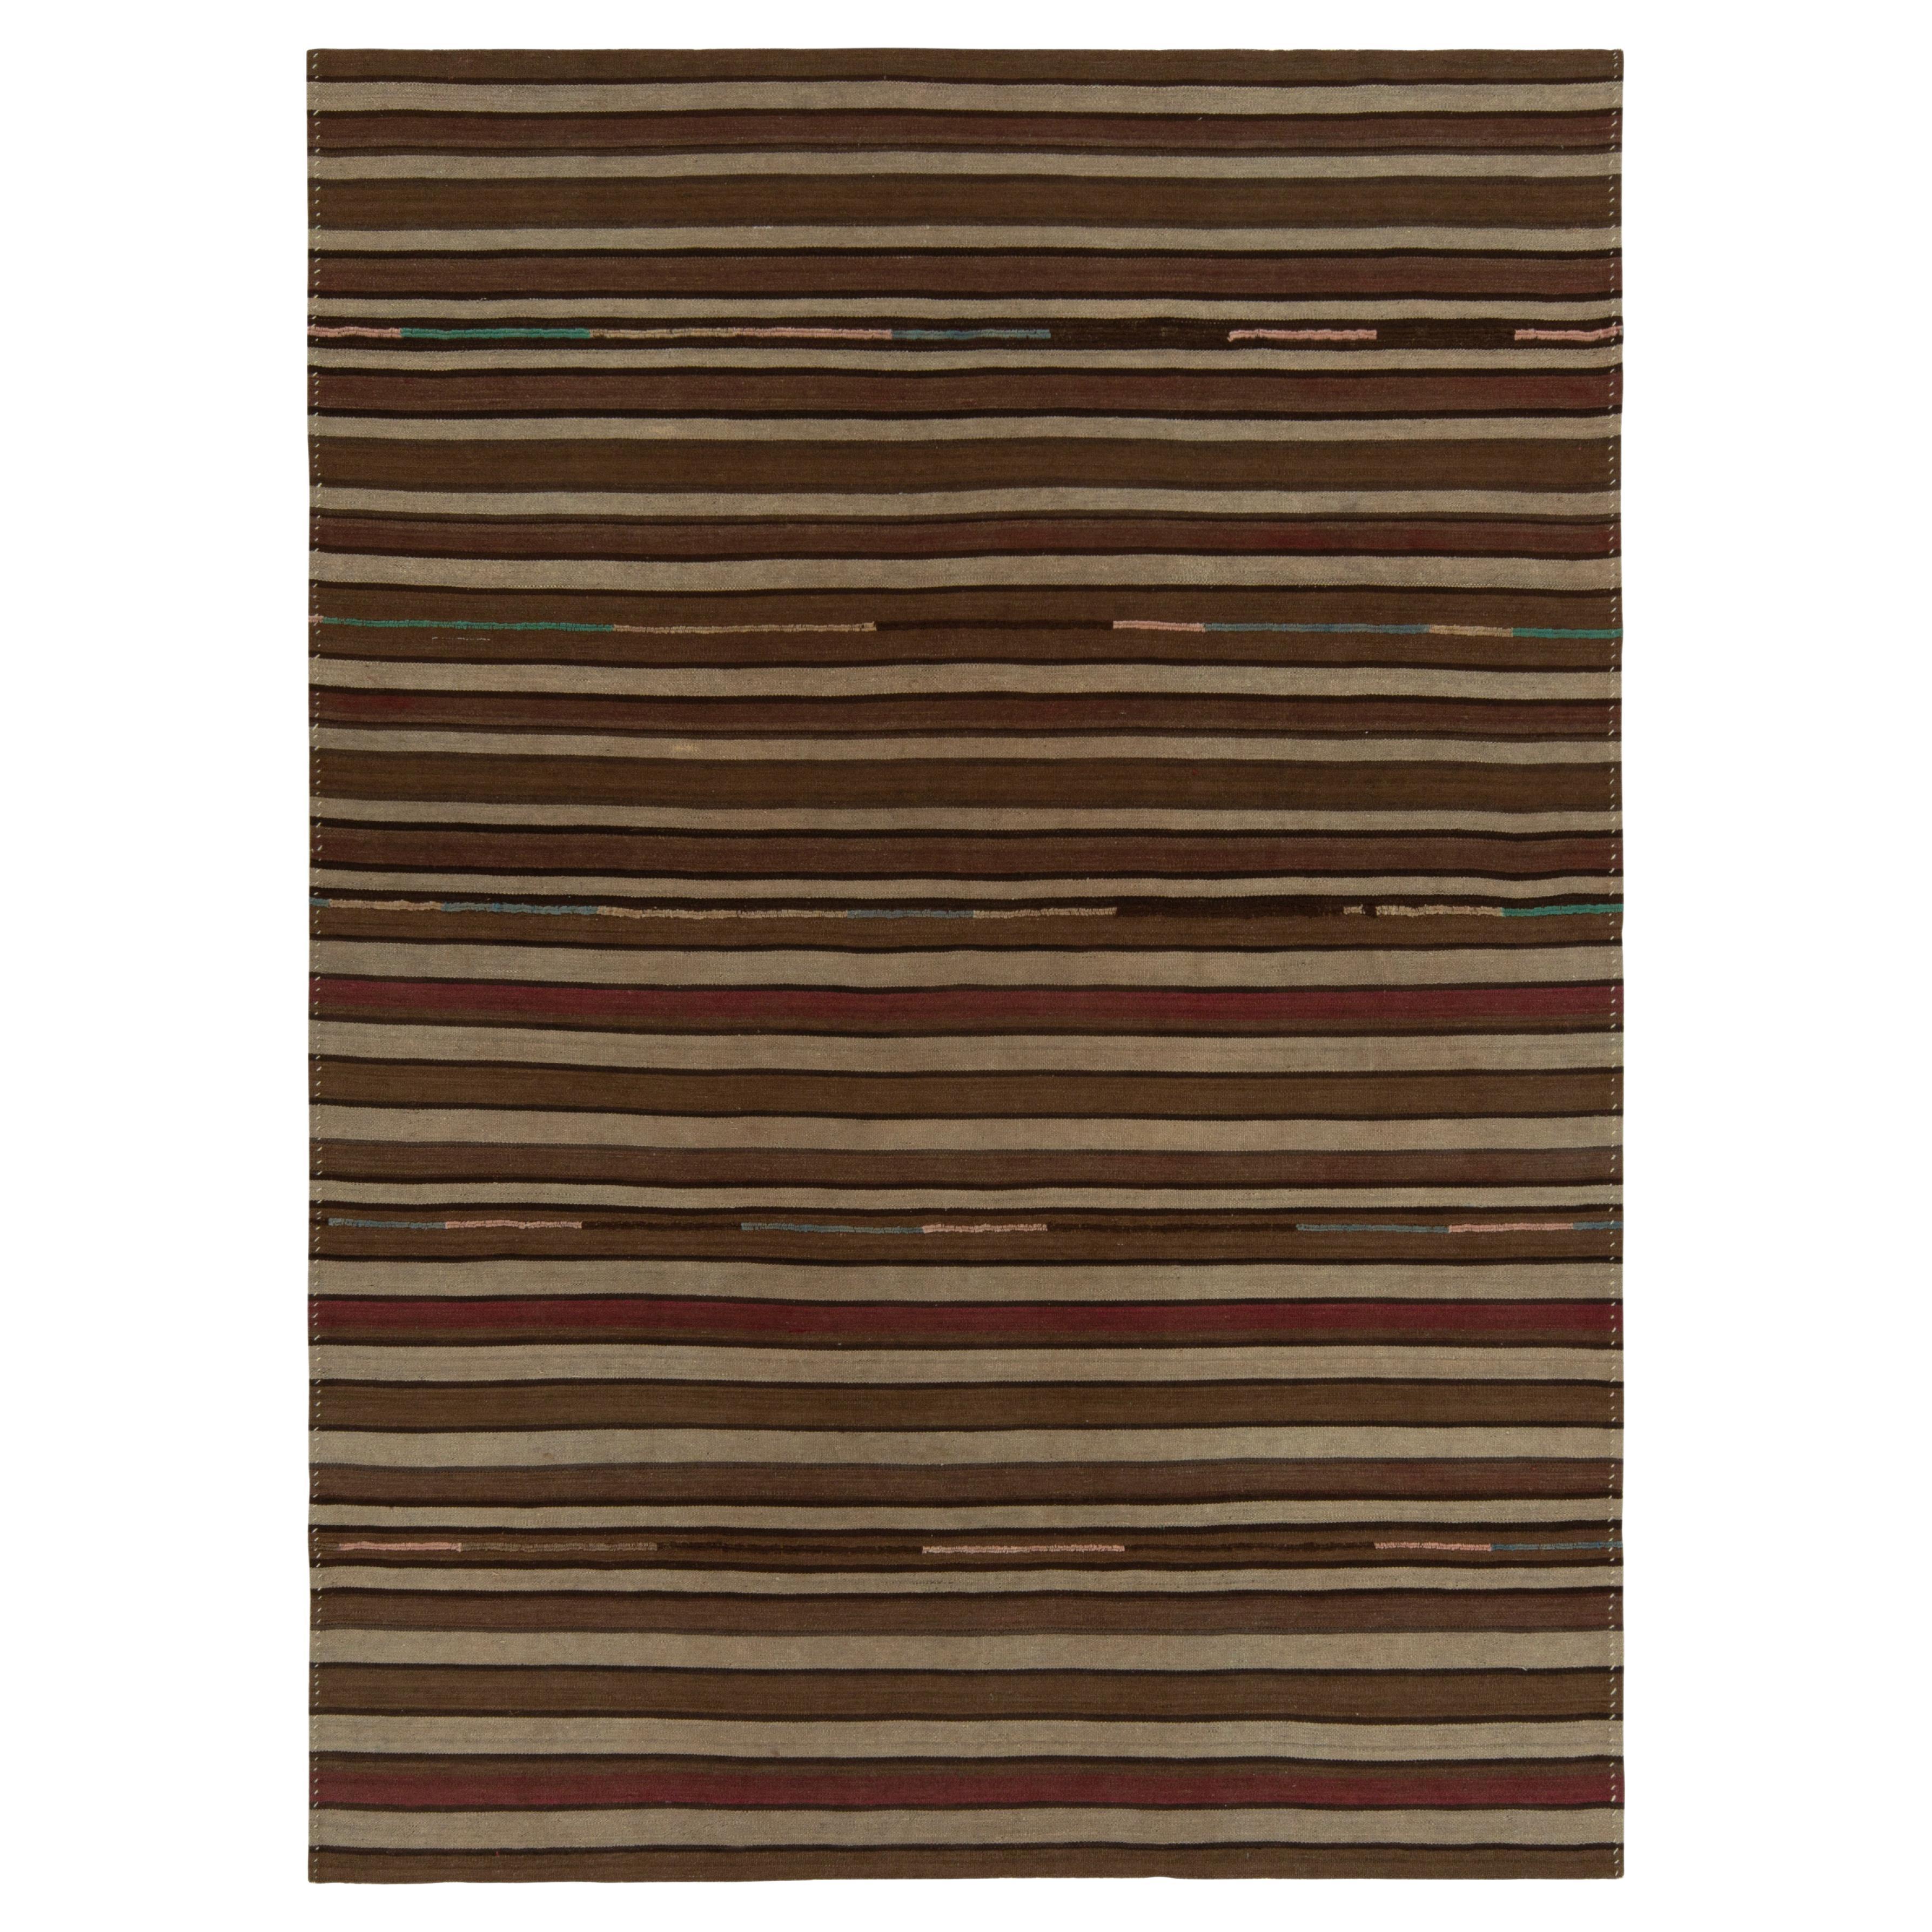 1930s Antique Kilim Rug in Beige-Brown & Red Stripe Patterns by Rug & Kilim